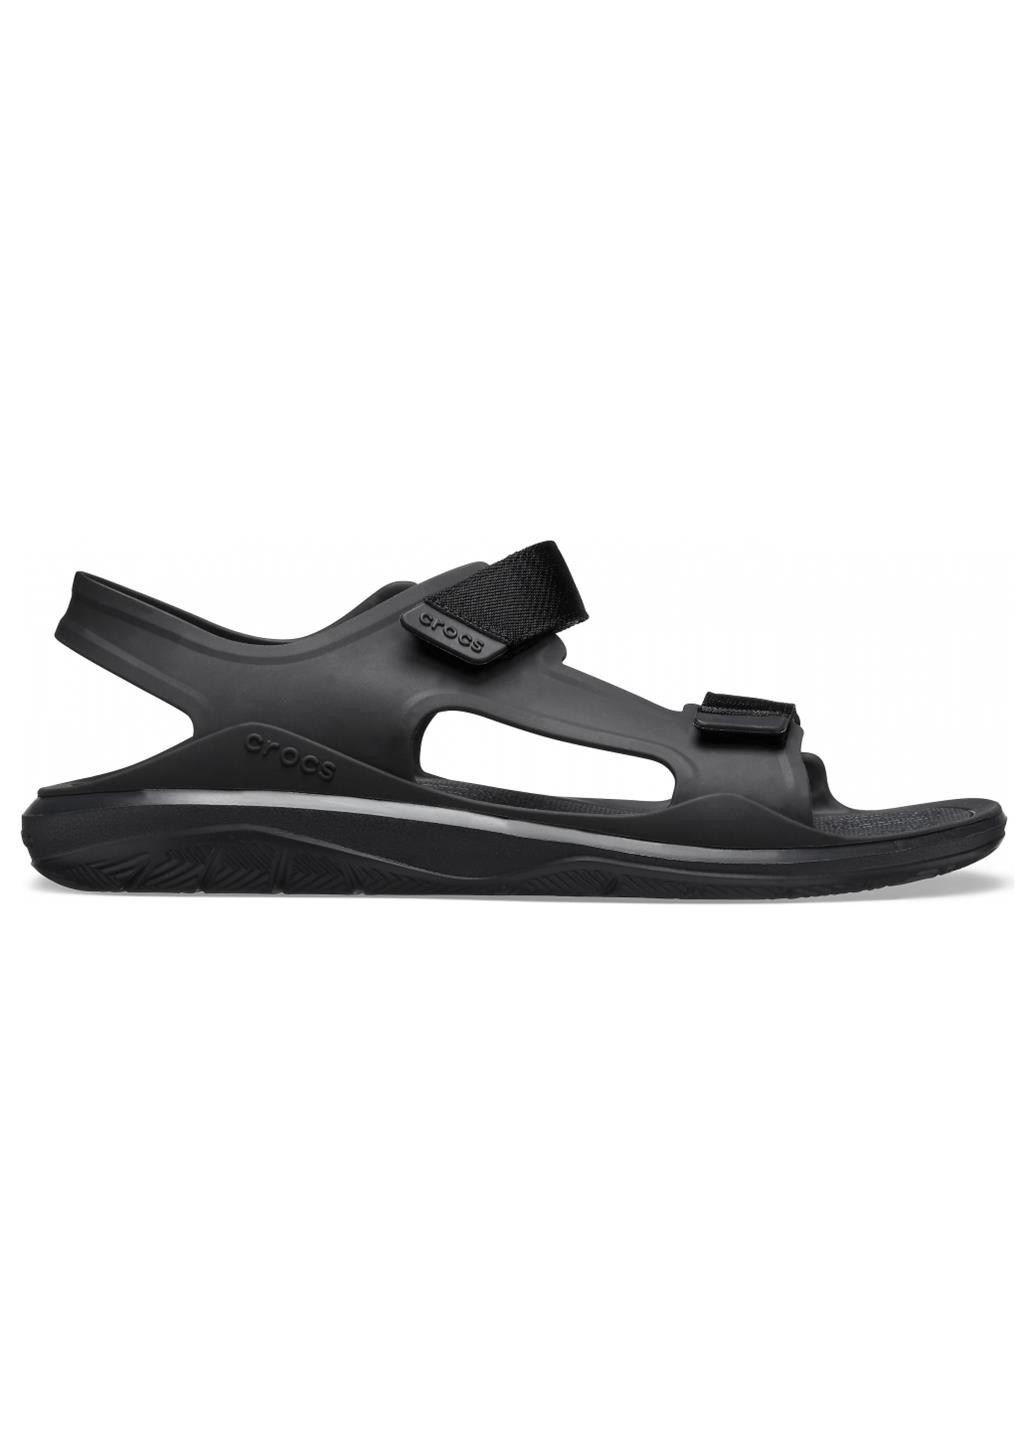 Спортивные крокс sandal Crocs на липучке